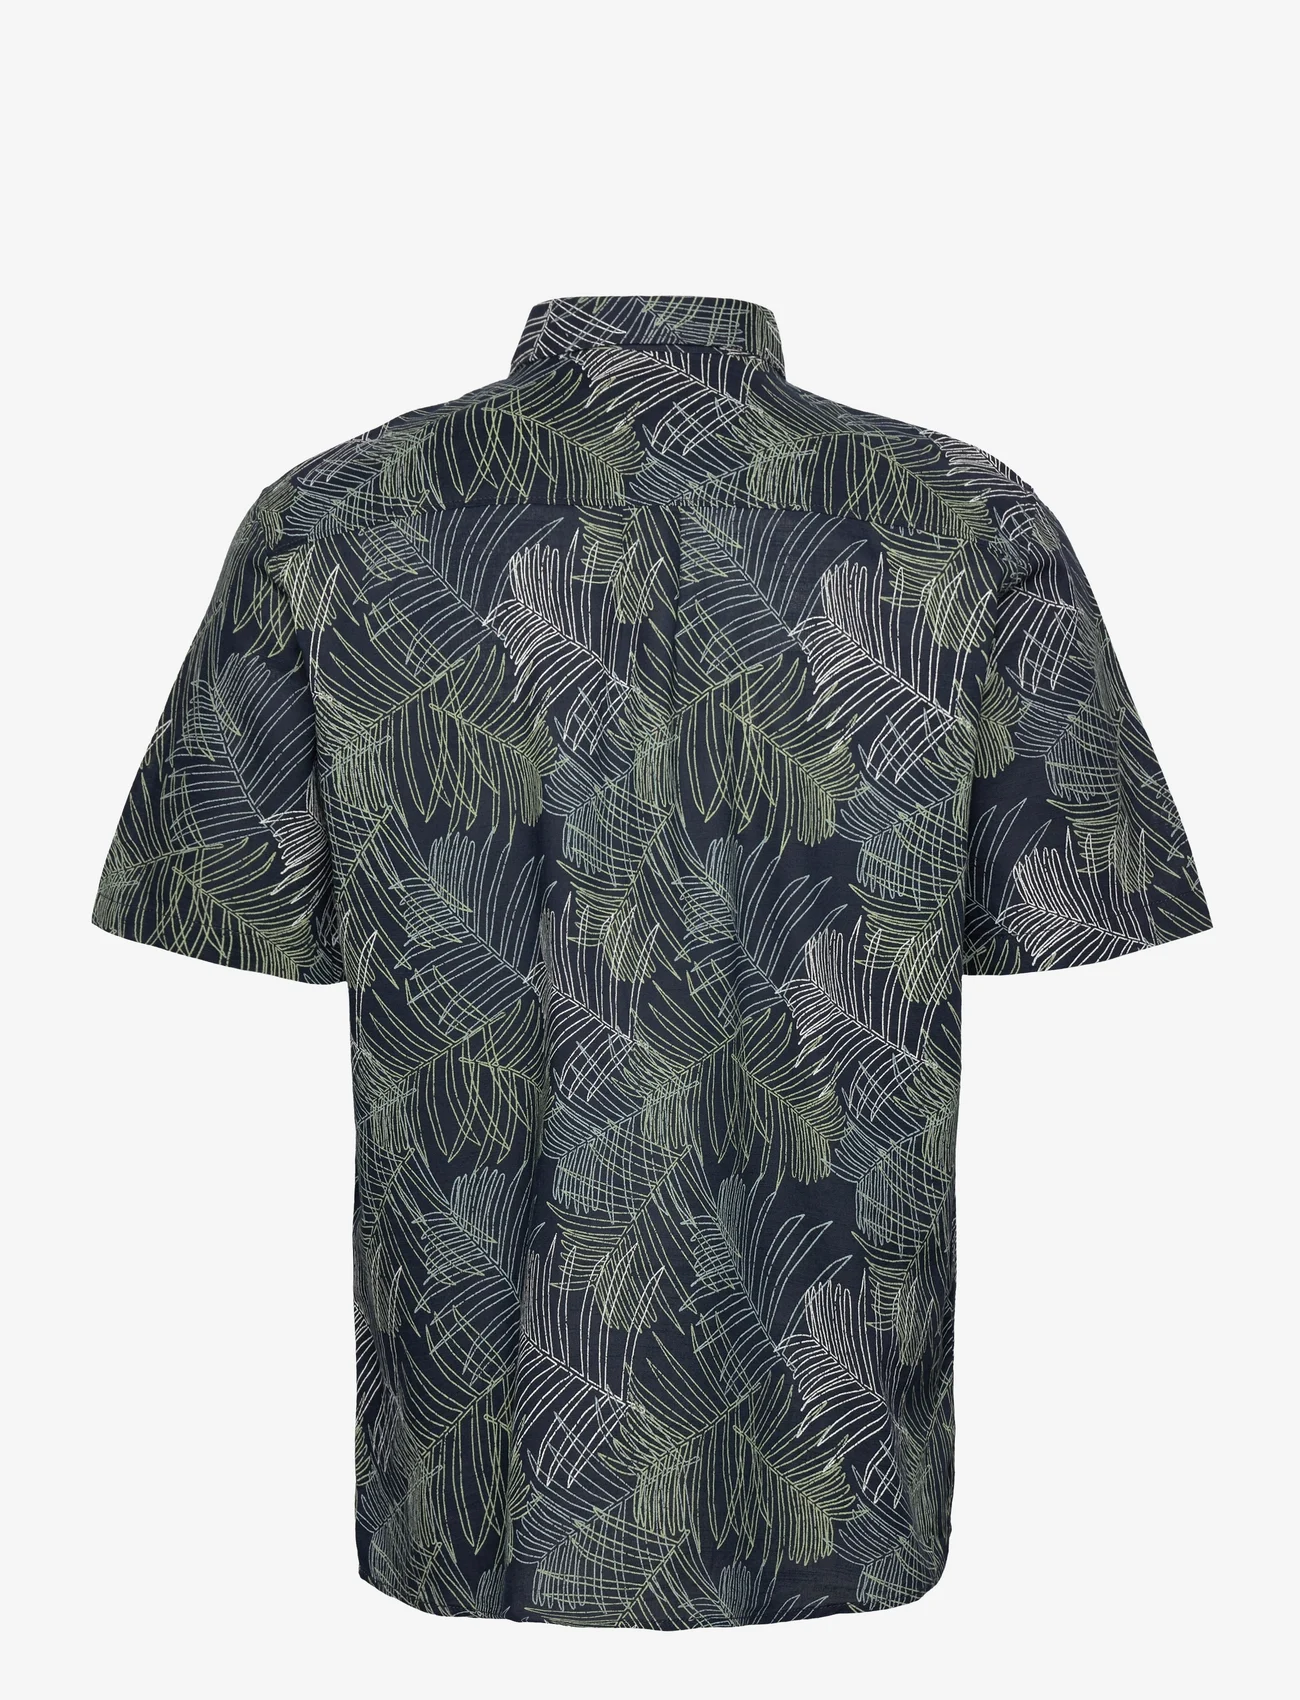 Tom Tailor - comfort printed shirt - laveste priser - navy multicolor leaf design - 1